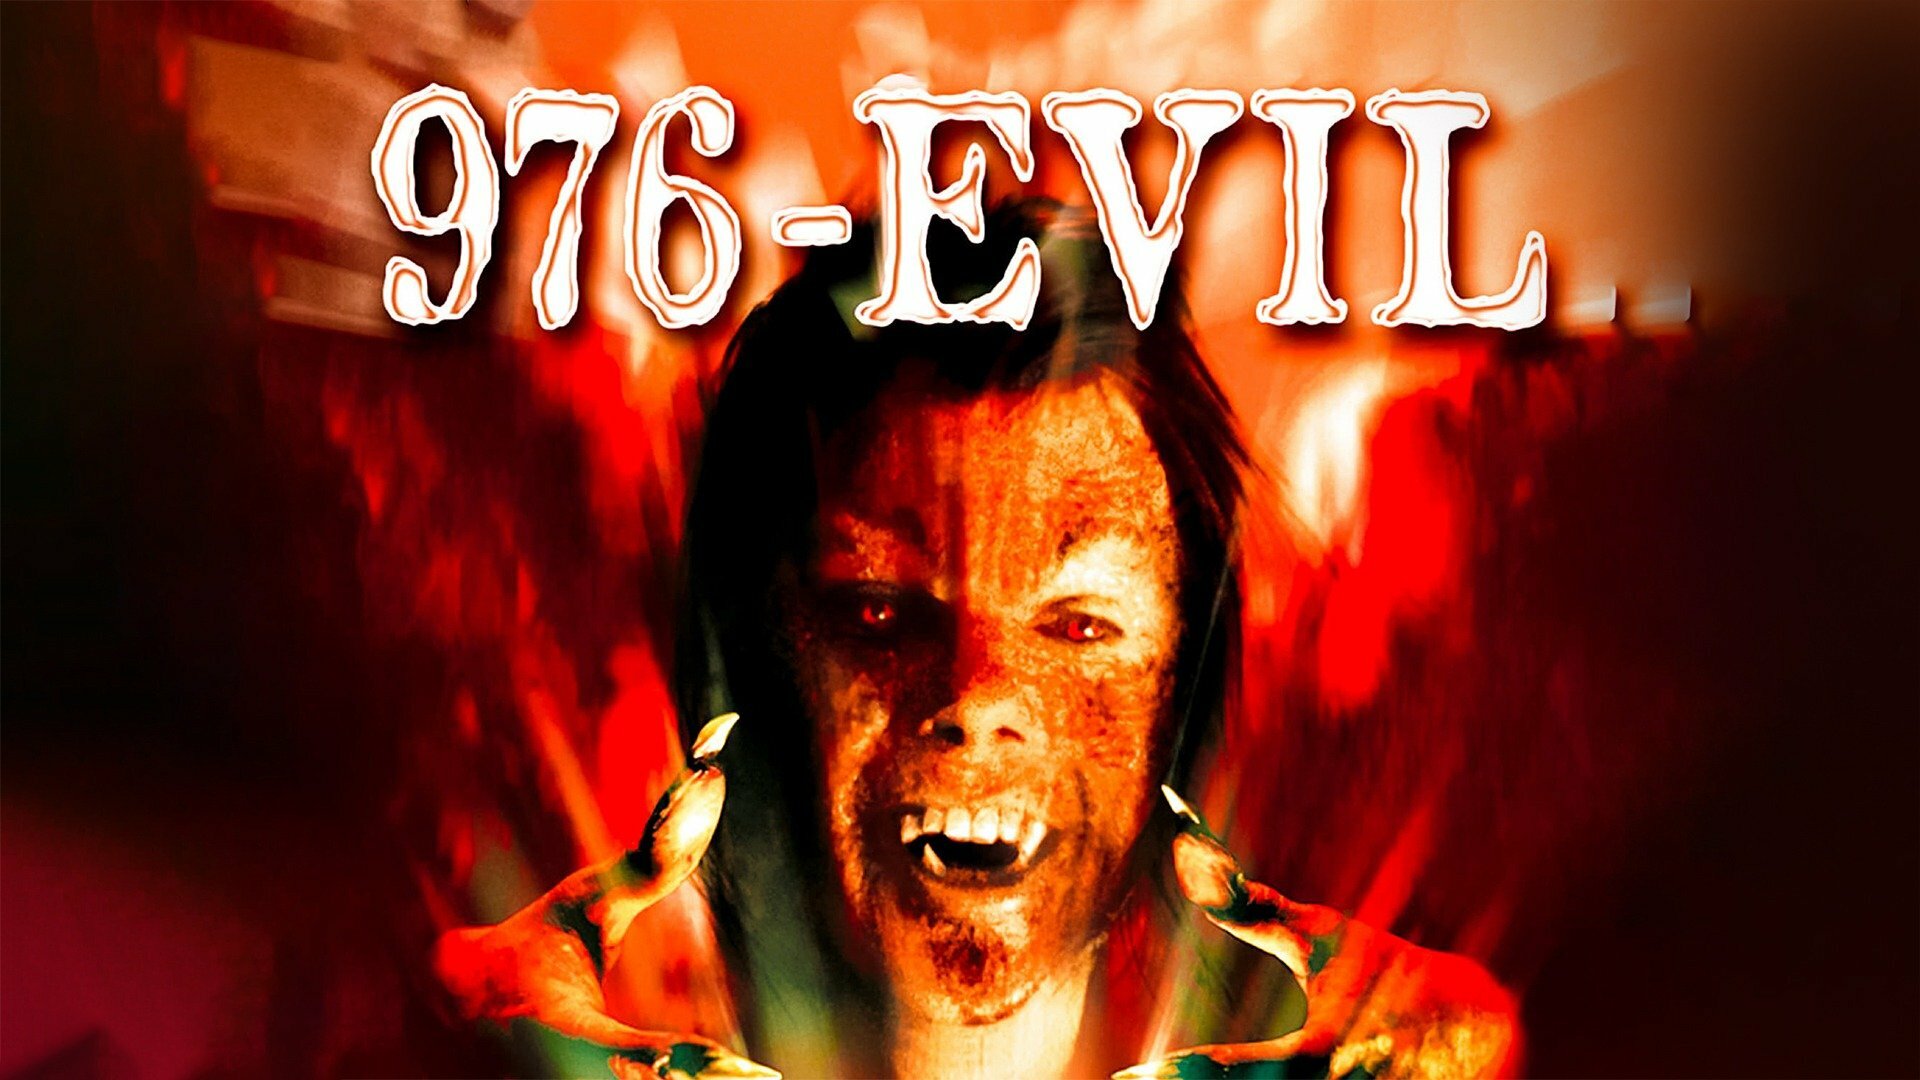 976-evil